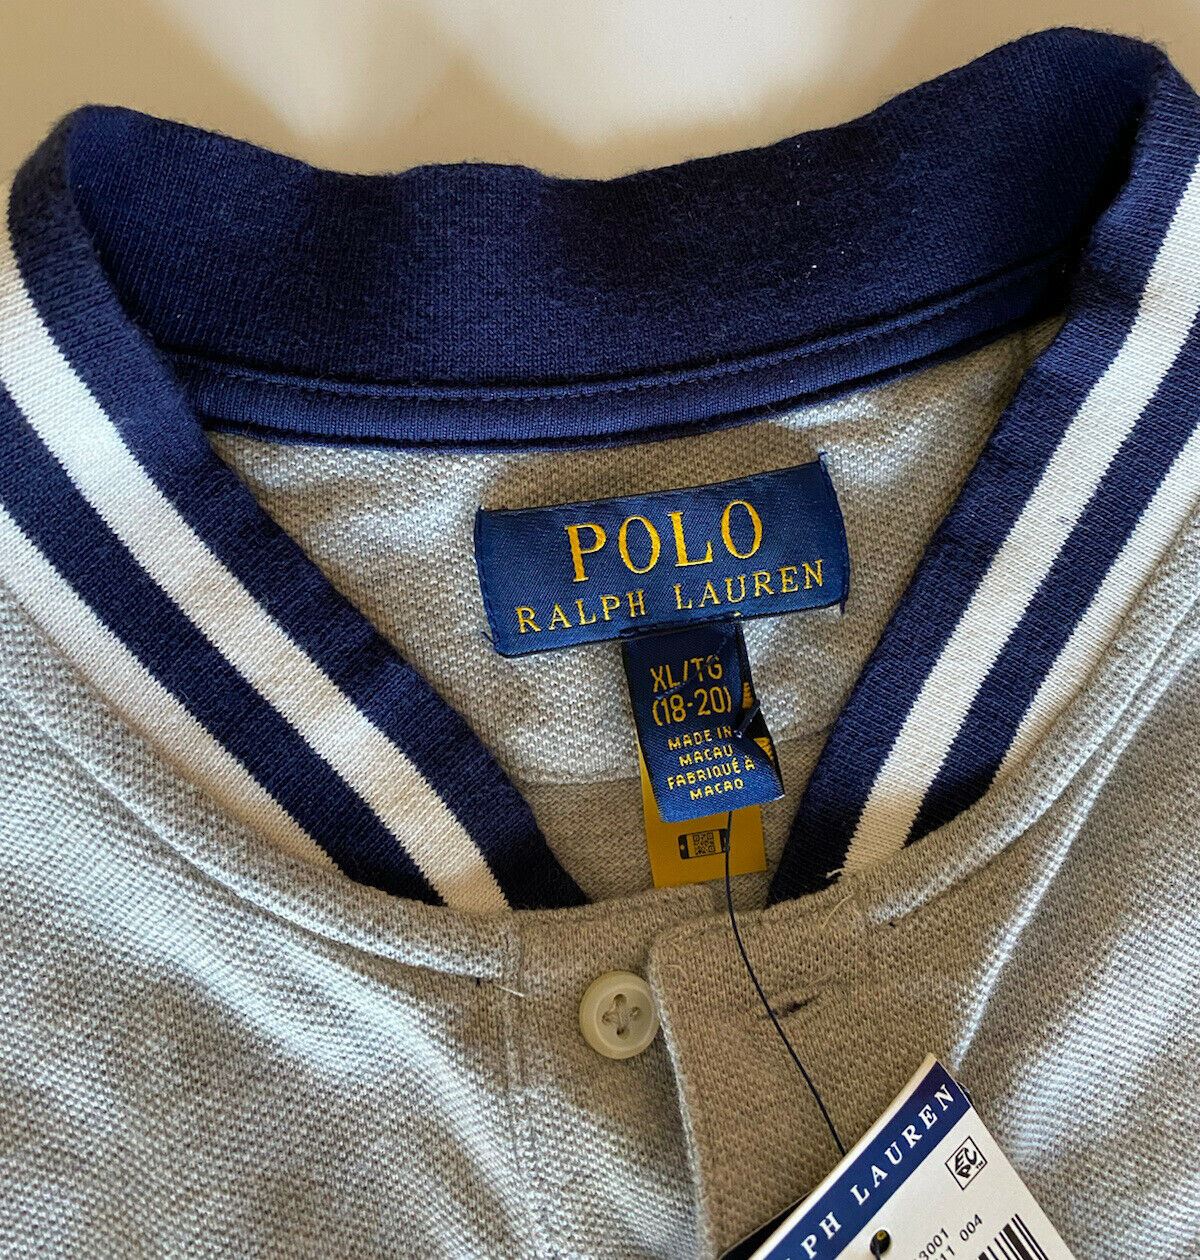 NWT $79.99 Polo Ralph Lauren Tiger Boy's Polo Tee Size M (10-12)